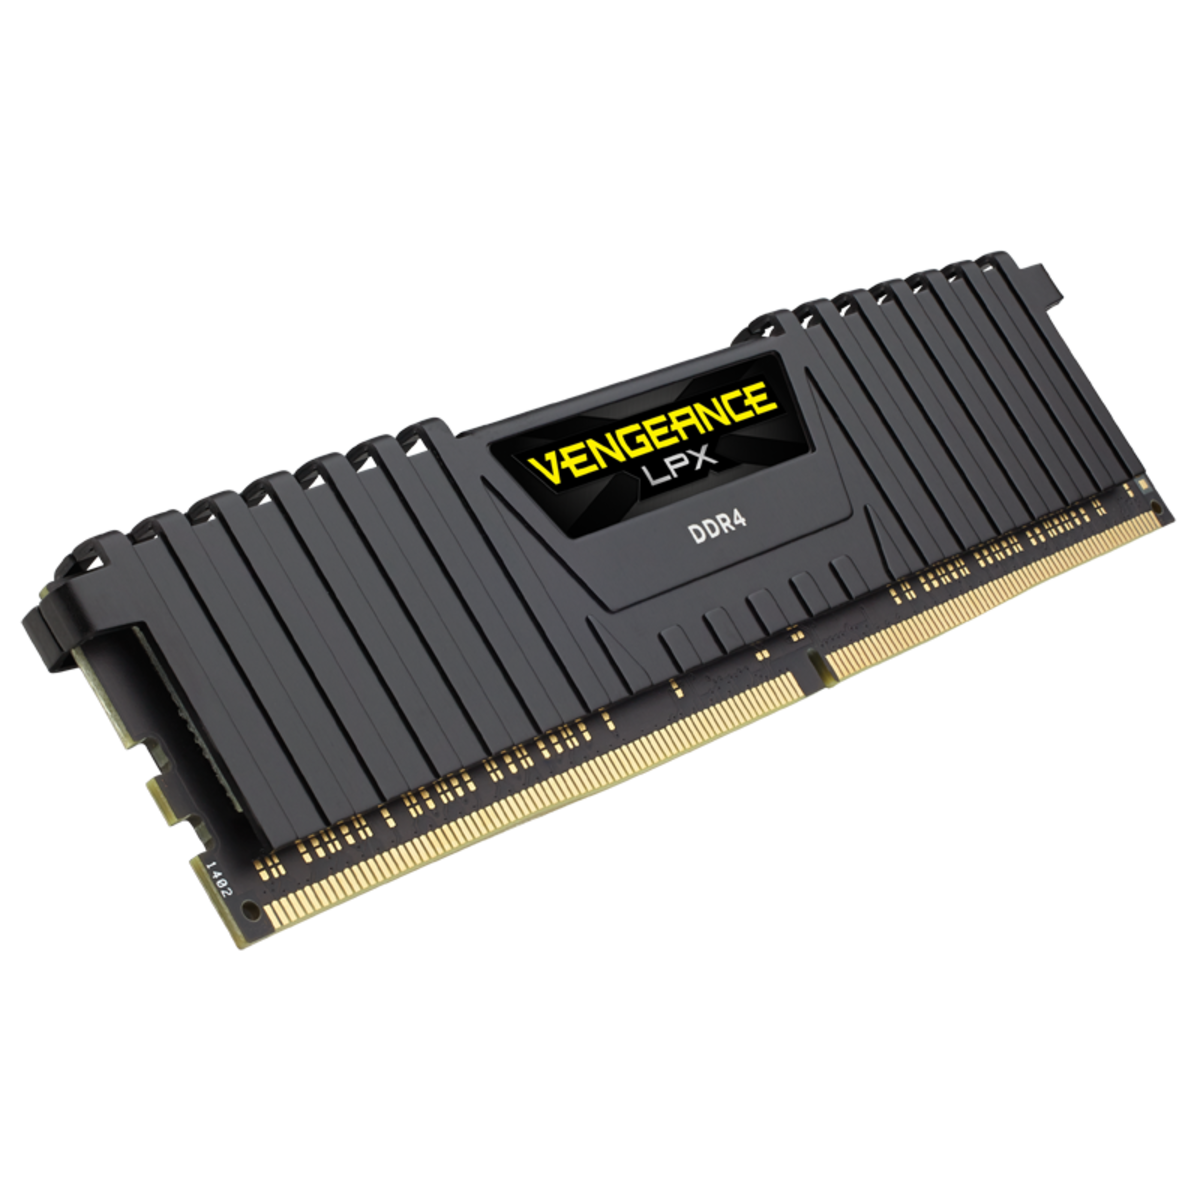 CORSAIR Vengeance LPX 16GB DDR4 3200MHz Desktop Memory Stick